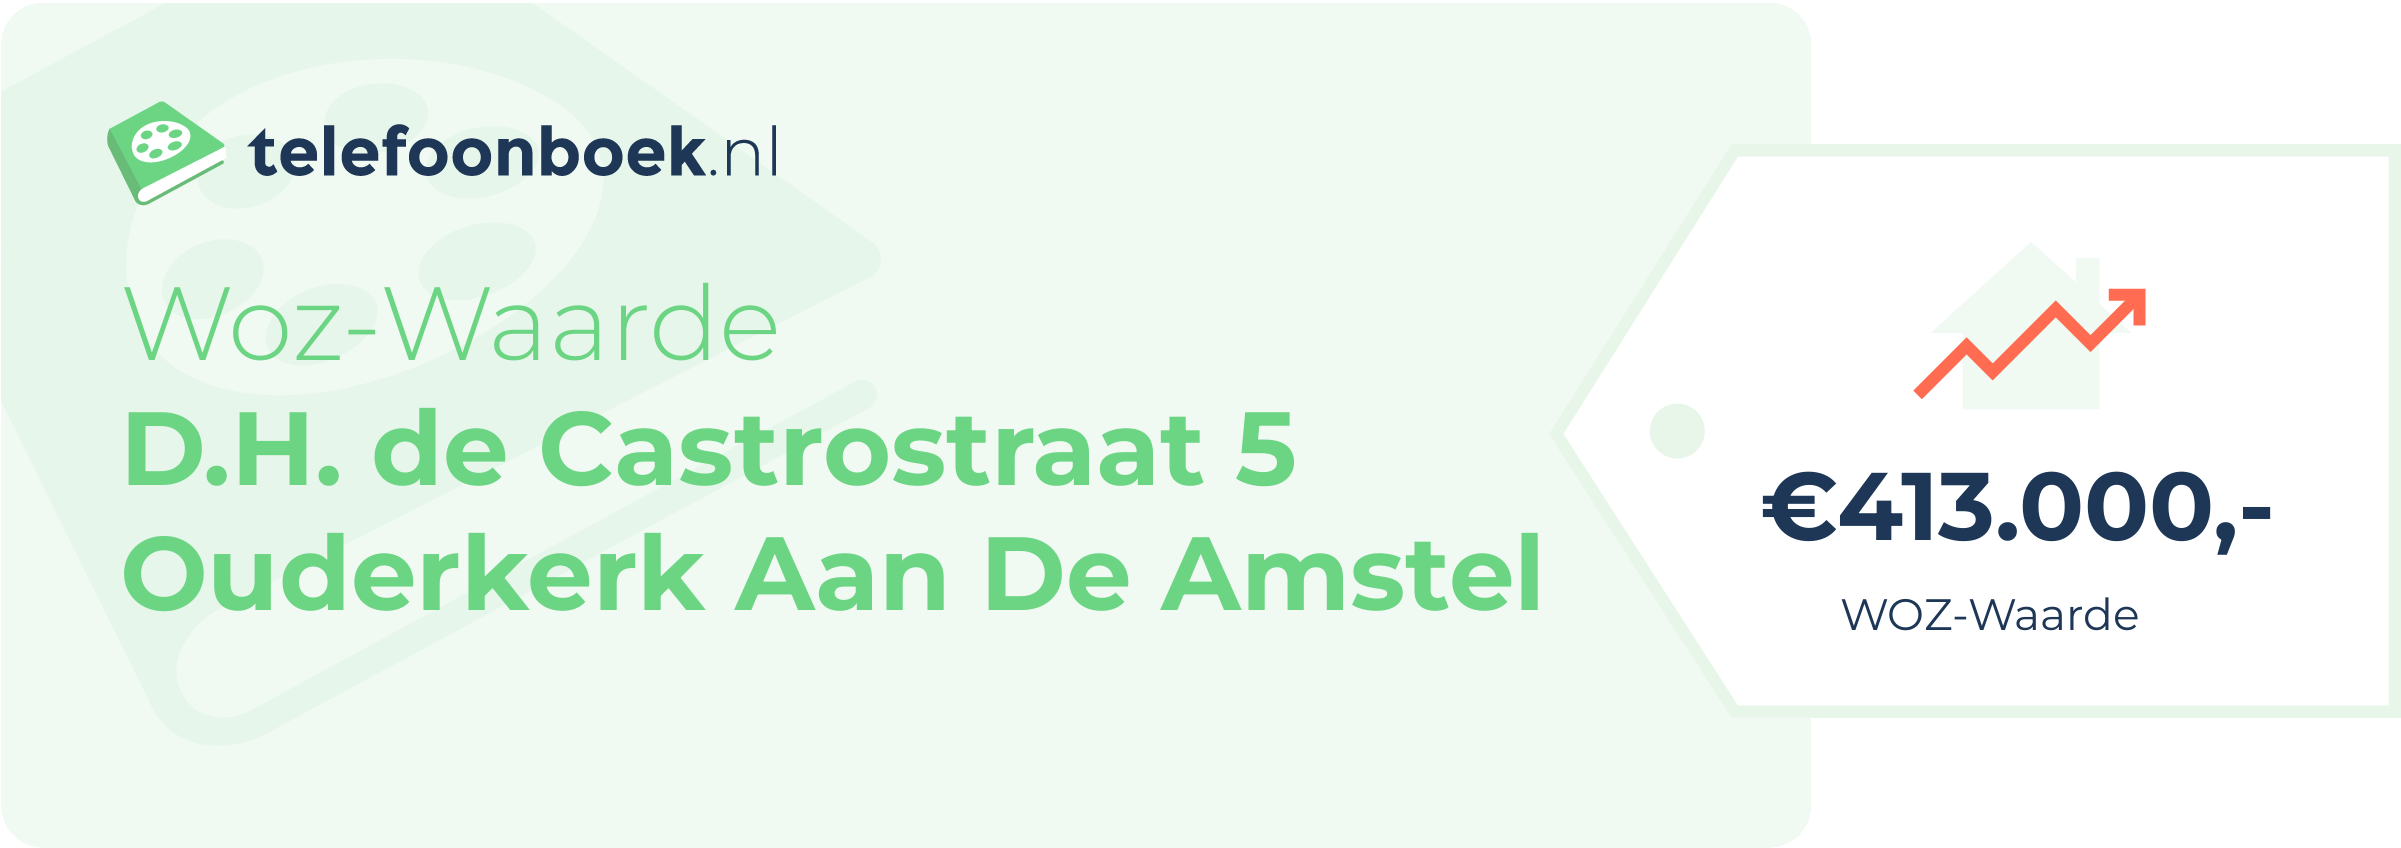 WOZ-waarde D.H. De Castrostraat 5 Ouderkerk Aan De Amstel